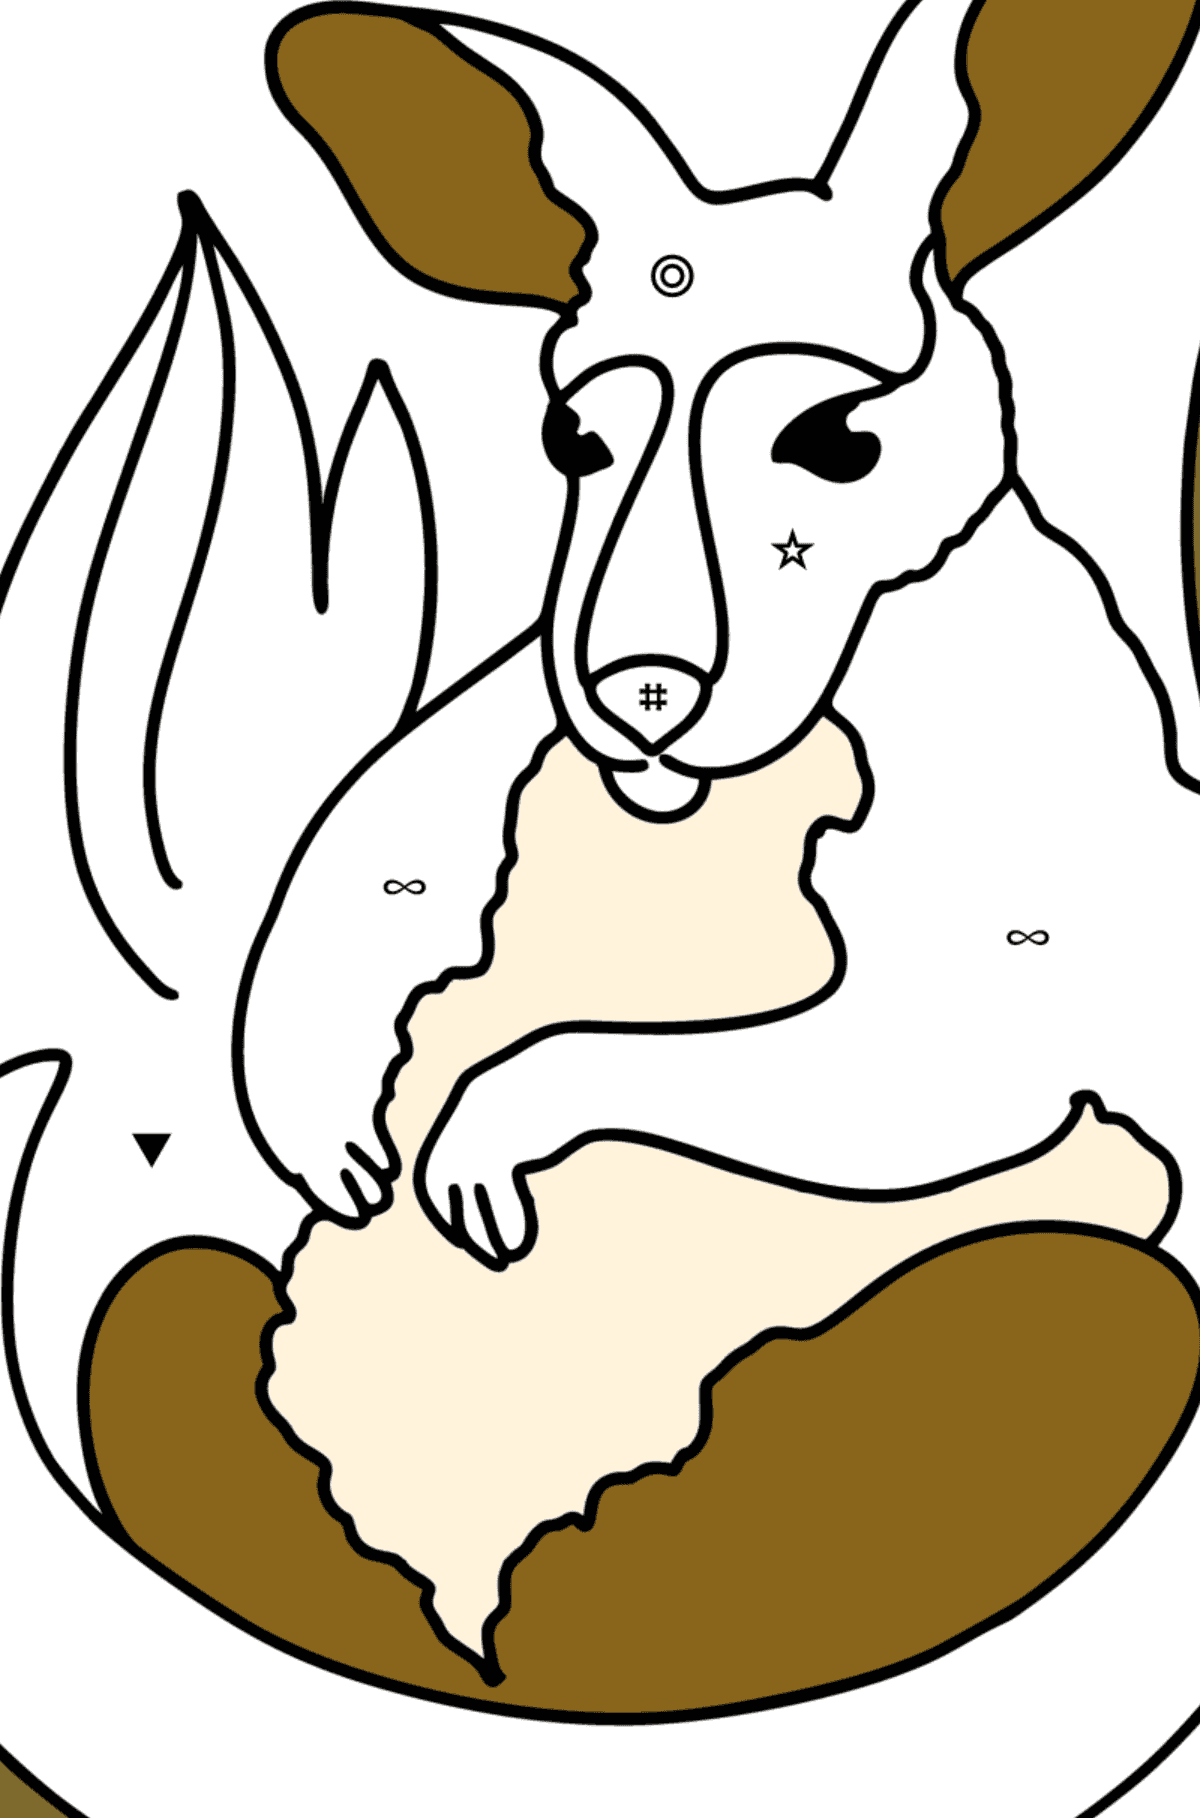 Coloriage - Adorable bébé kangourou - Coloriage par Symboles pour les Enfants